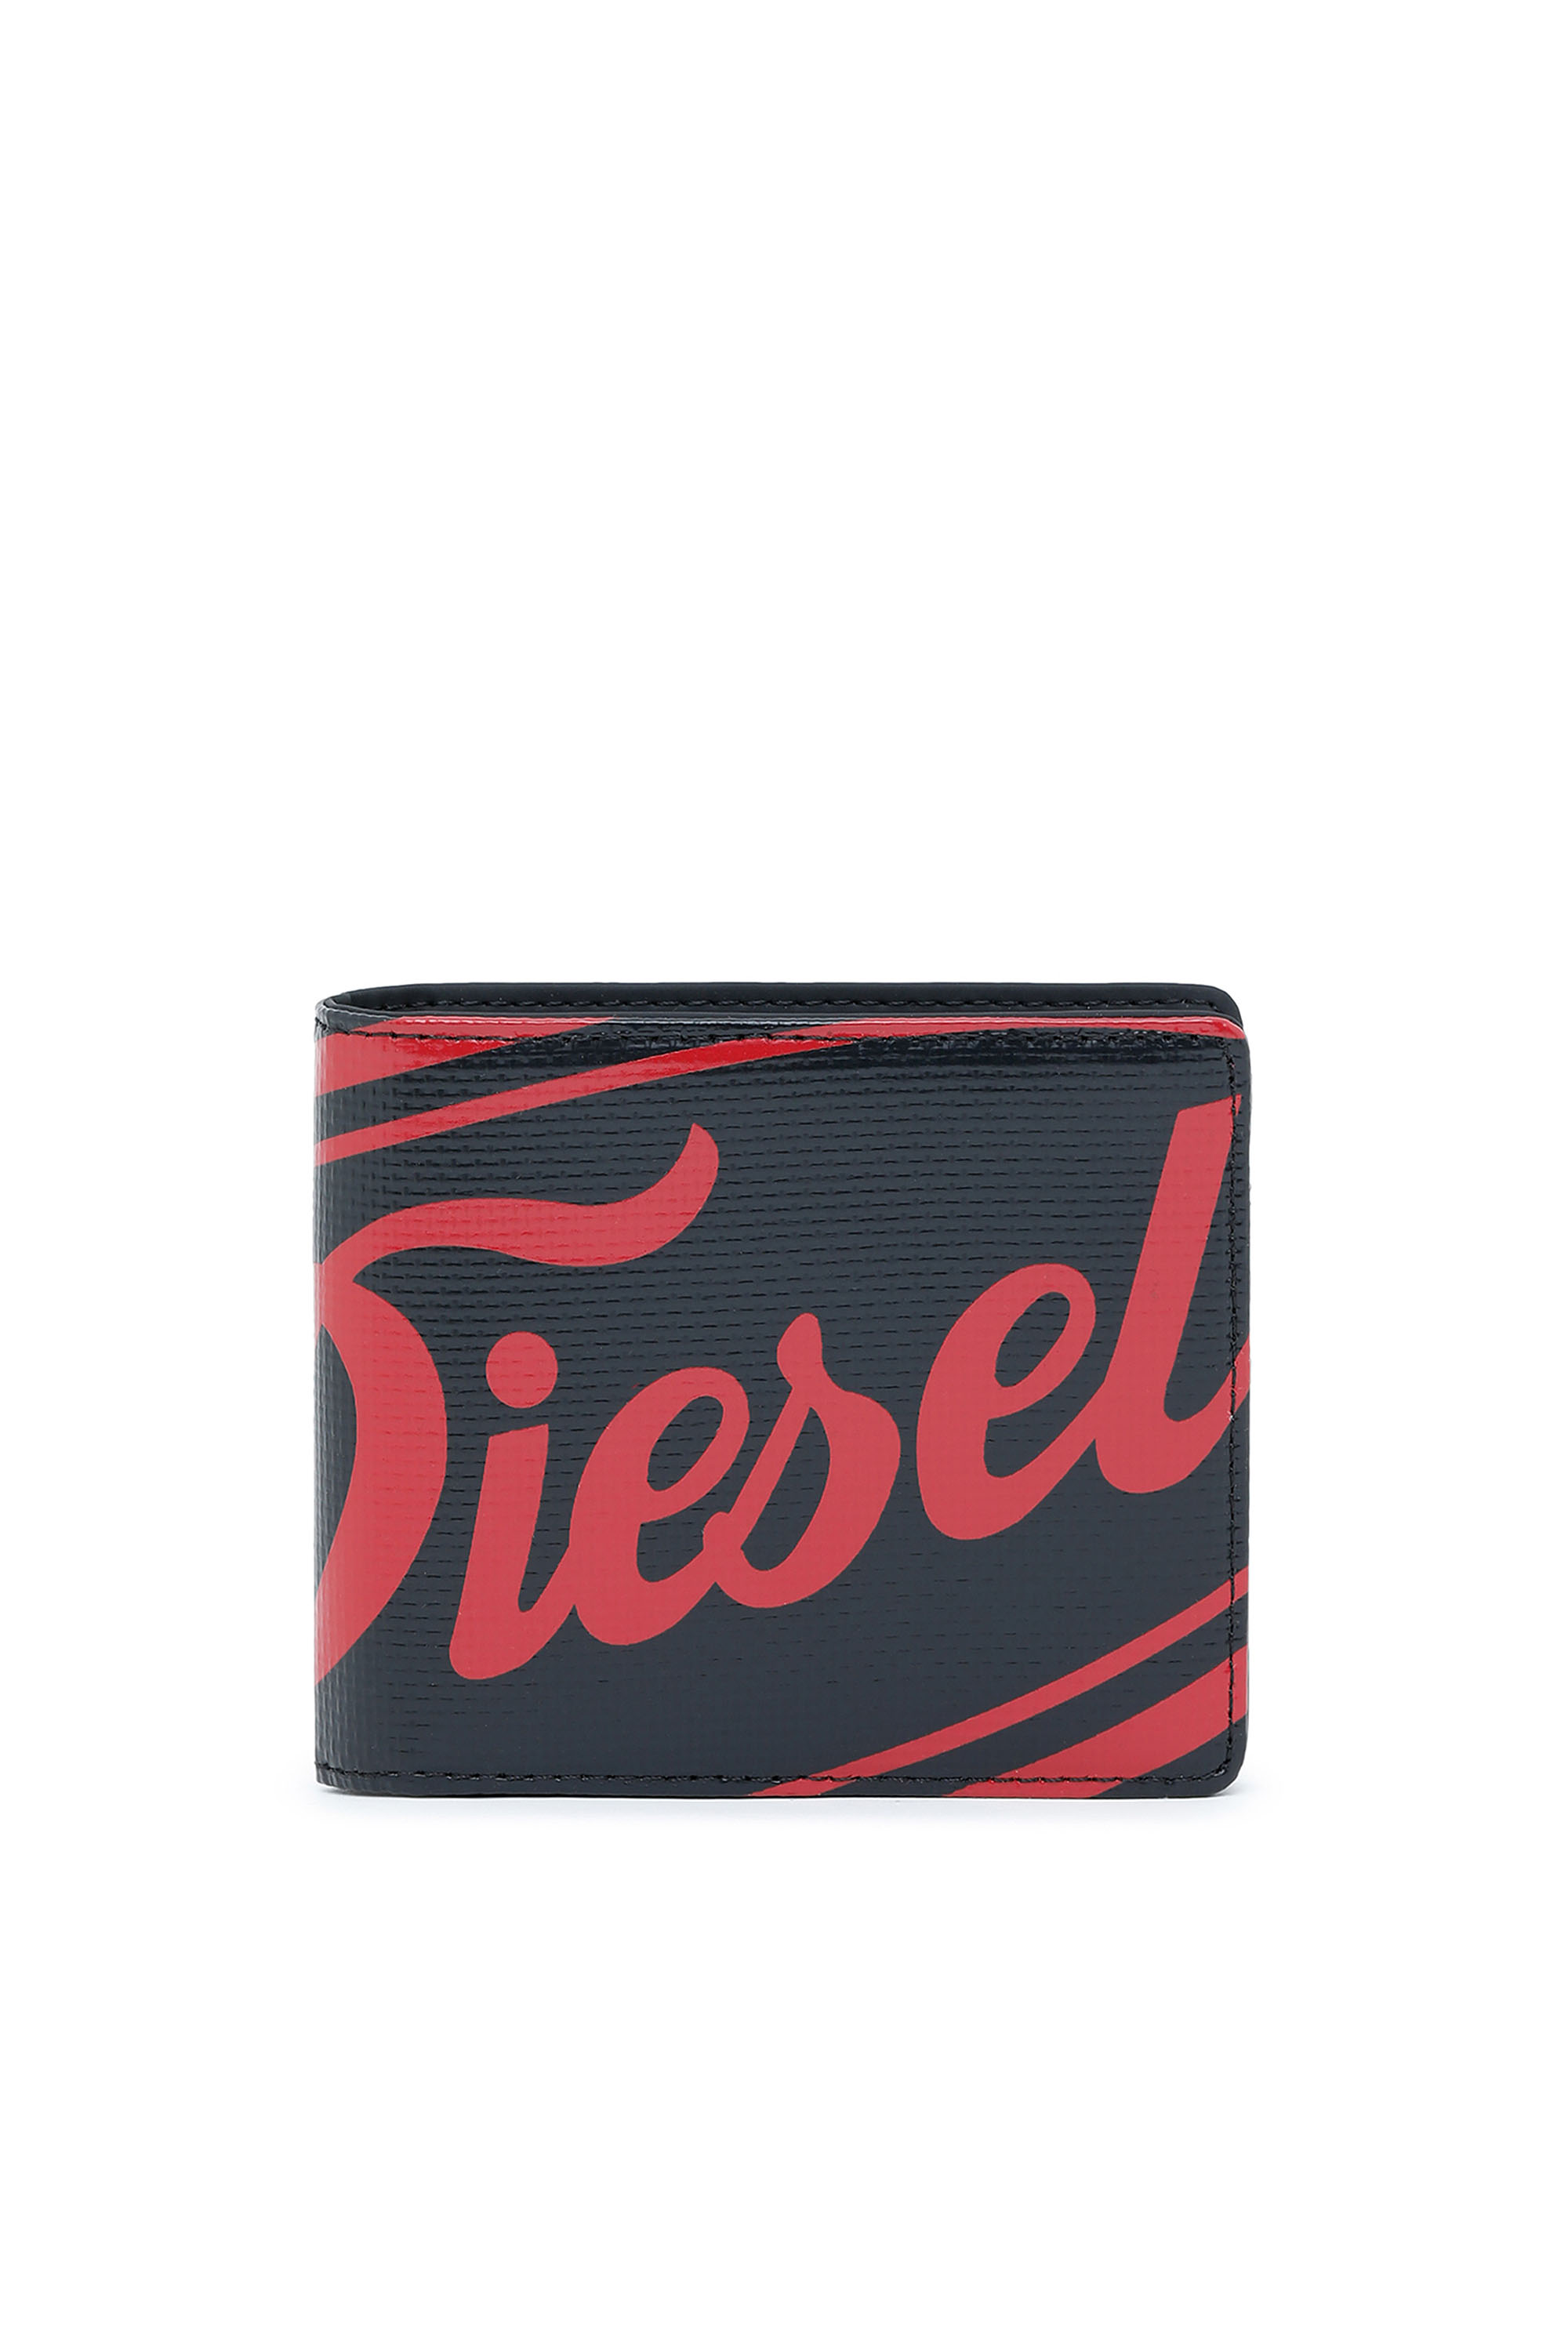 Diesel - HIRESH S, Nero - Image 1